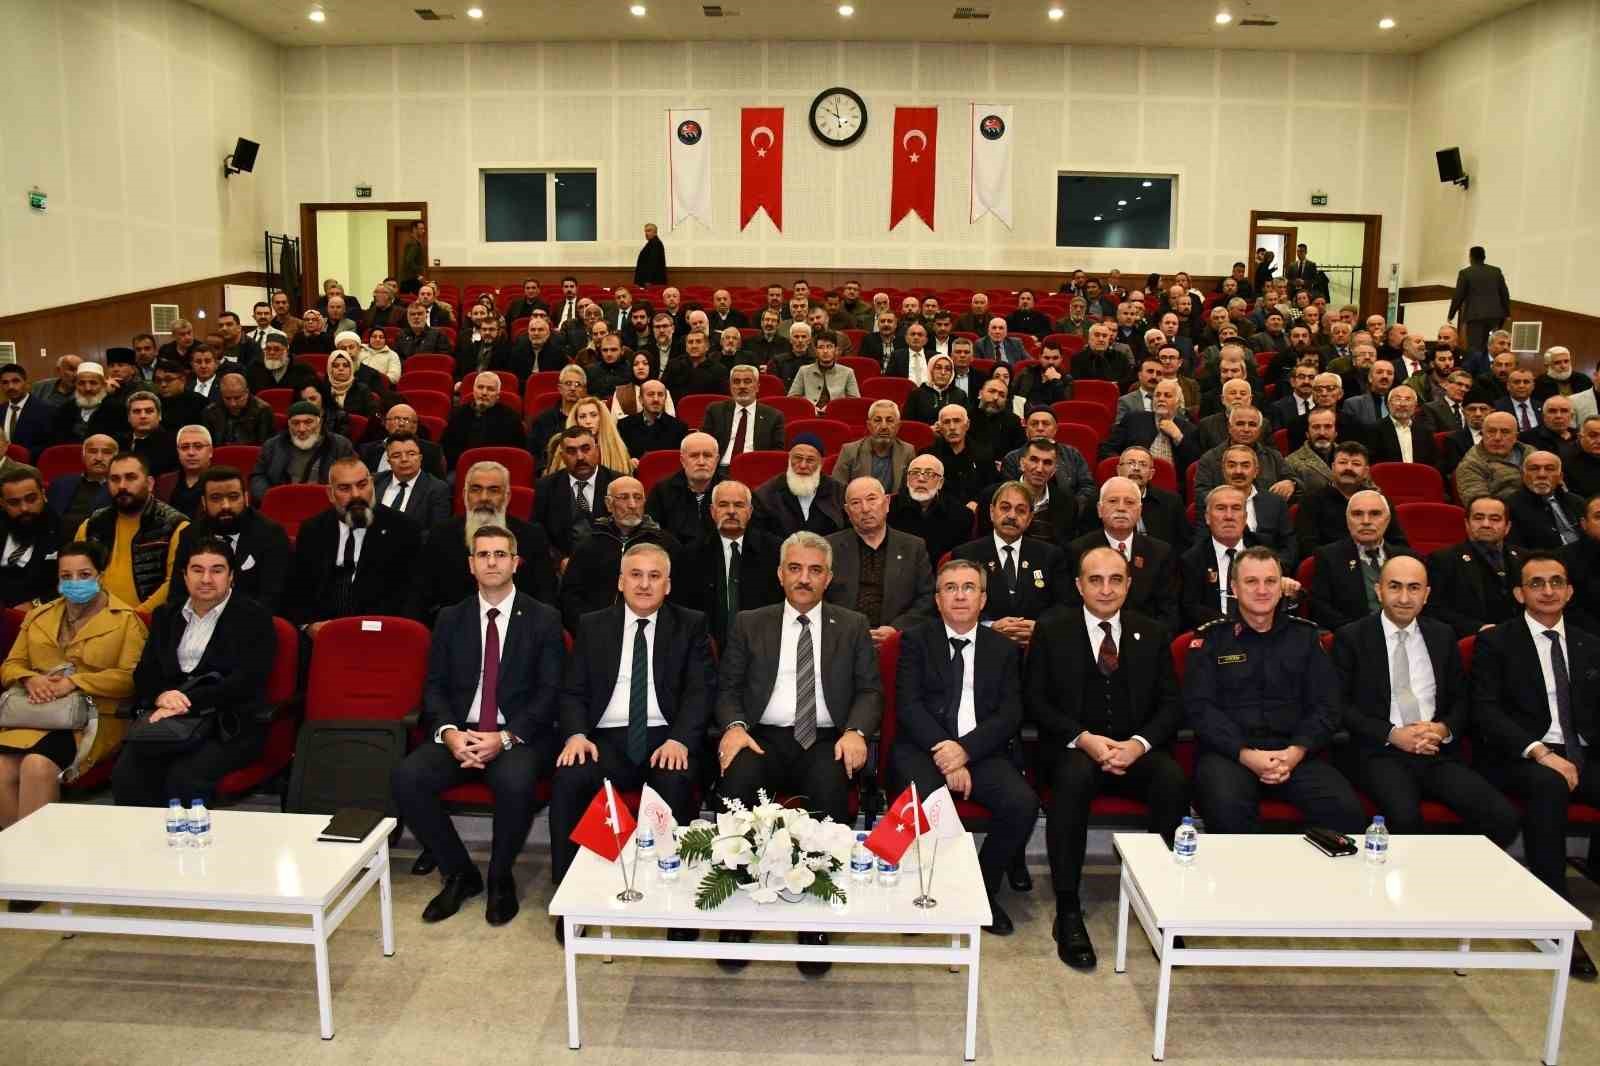 Vali Mehmet Makas: "Sivil toplum kuruluşlarının varlığı katılımcı demokrasi için çok önemli”